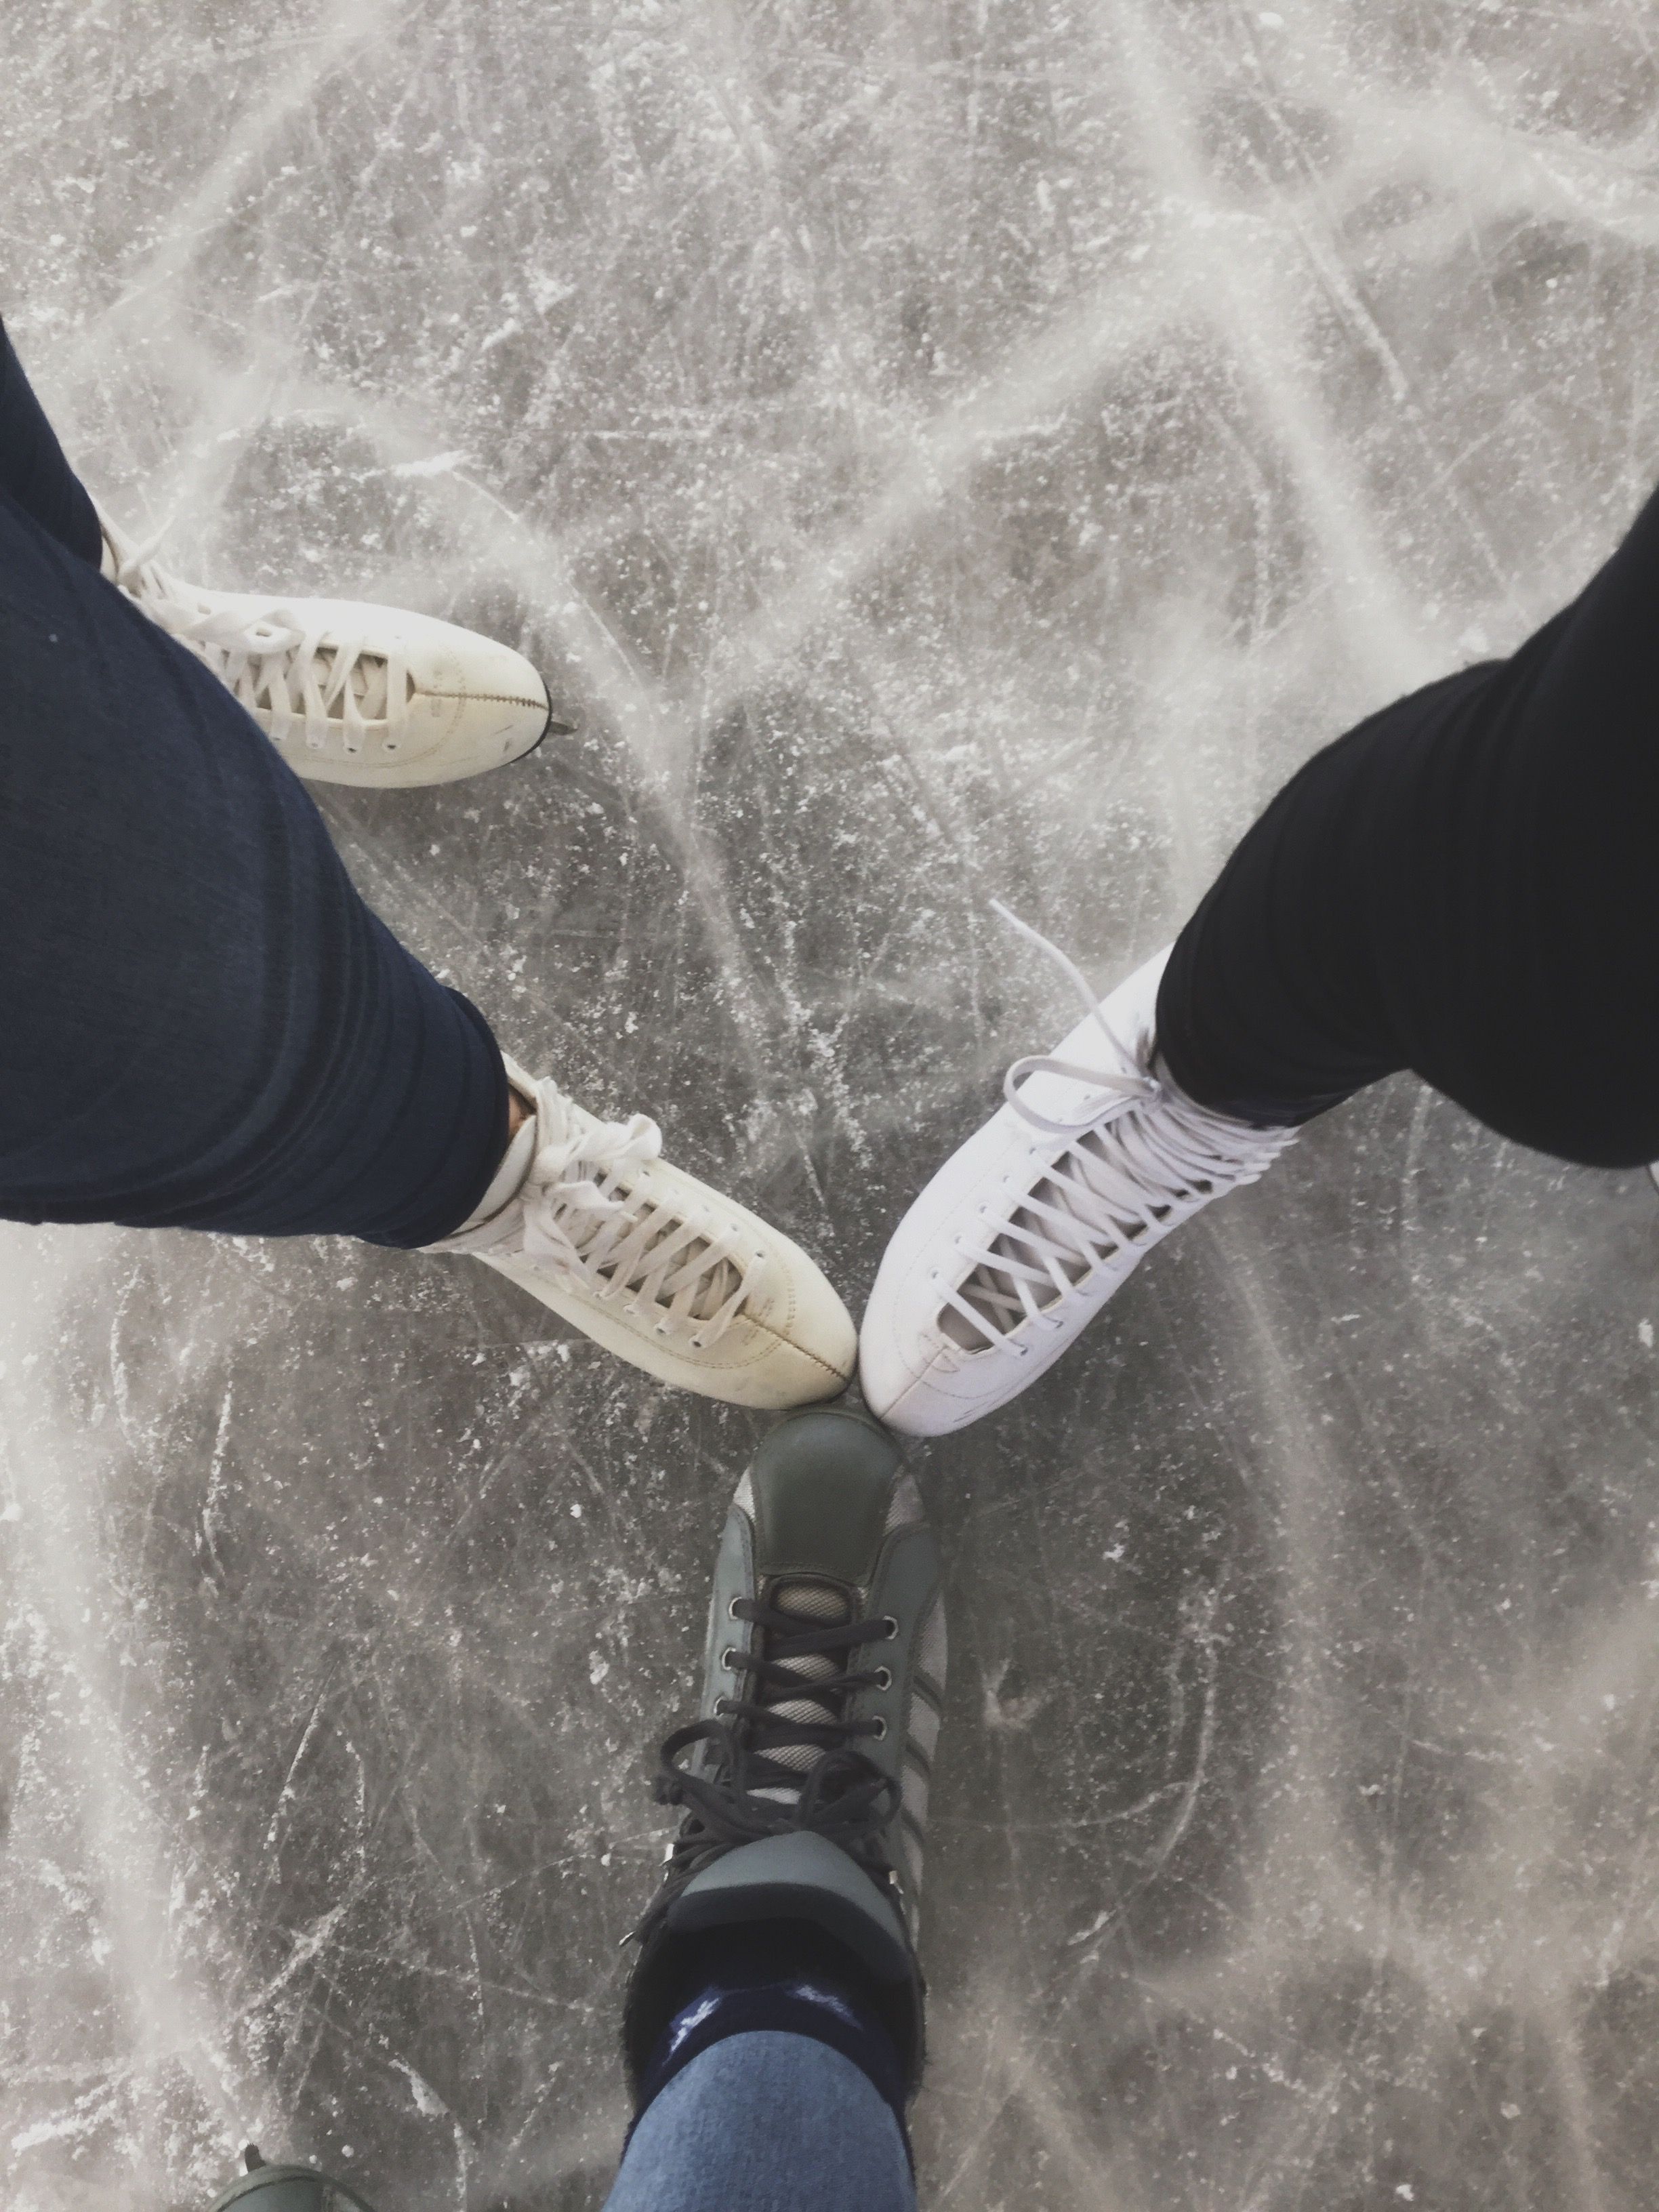 Ice skating aesthetic. Ice skating, Figure ice skates, Ice sports